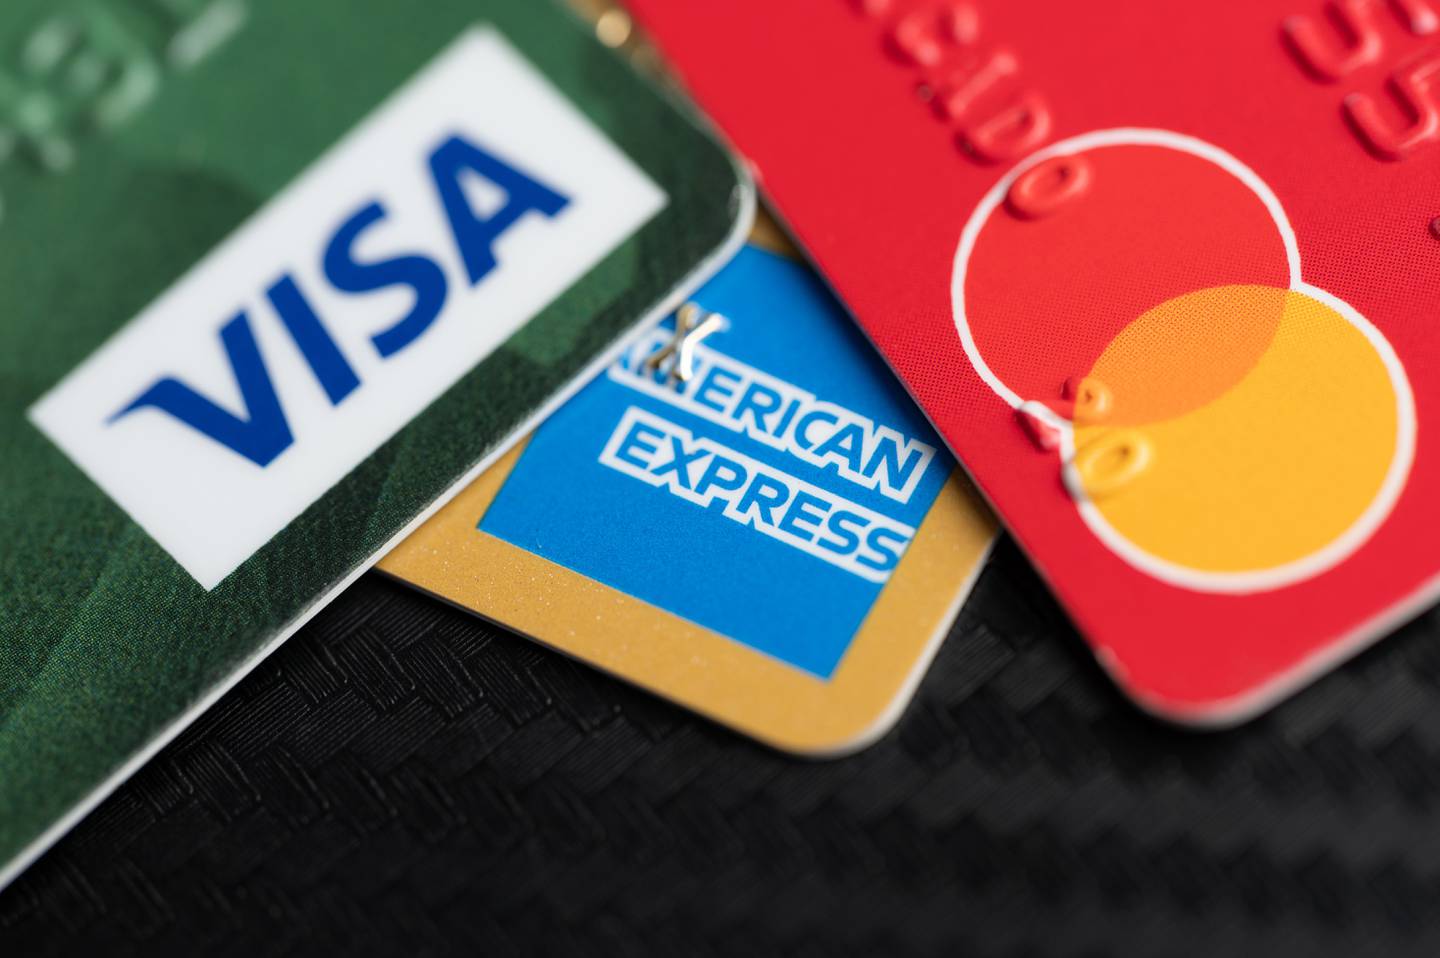 Estos son los mejores descuentos para tarjetahabientes de los 6 bancos más grandes de Costa Rica | Shutterstock | Visa, American Express, Mastercard.